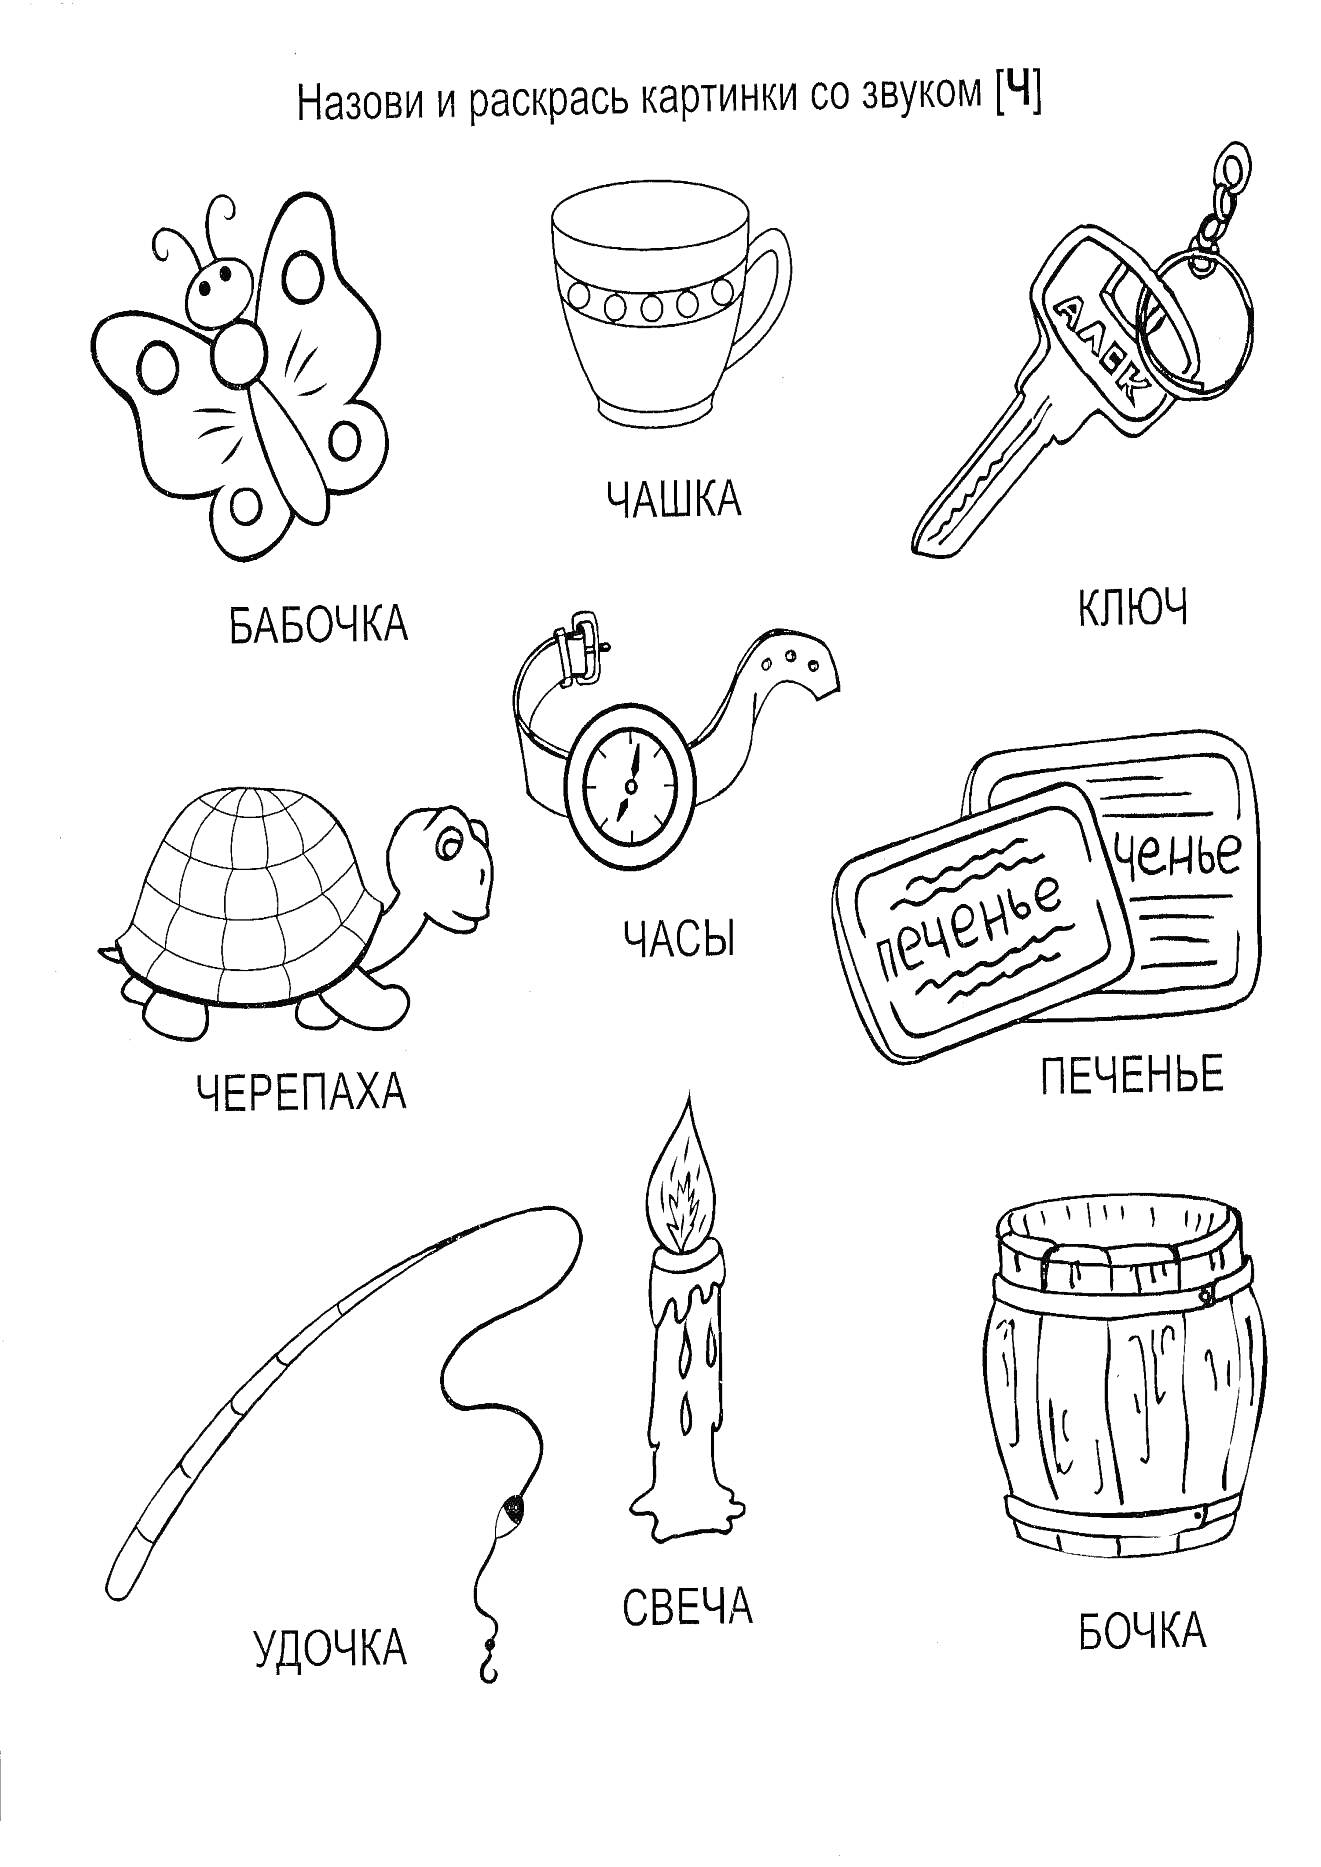 Раскраска Логопедическая раскраска с элементами: бабочка, чашка, ключ, черепаха, часы, печенье, удочка, свеча, бочка